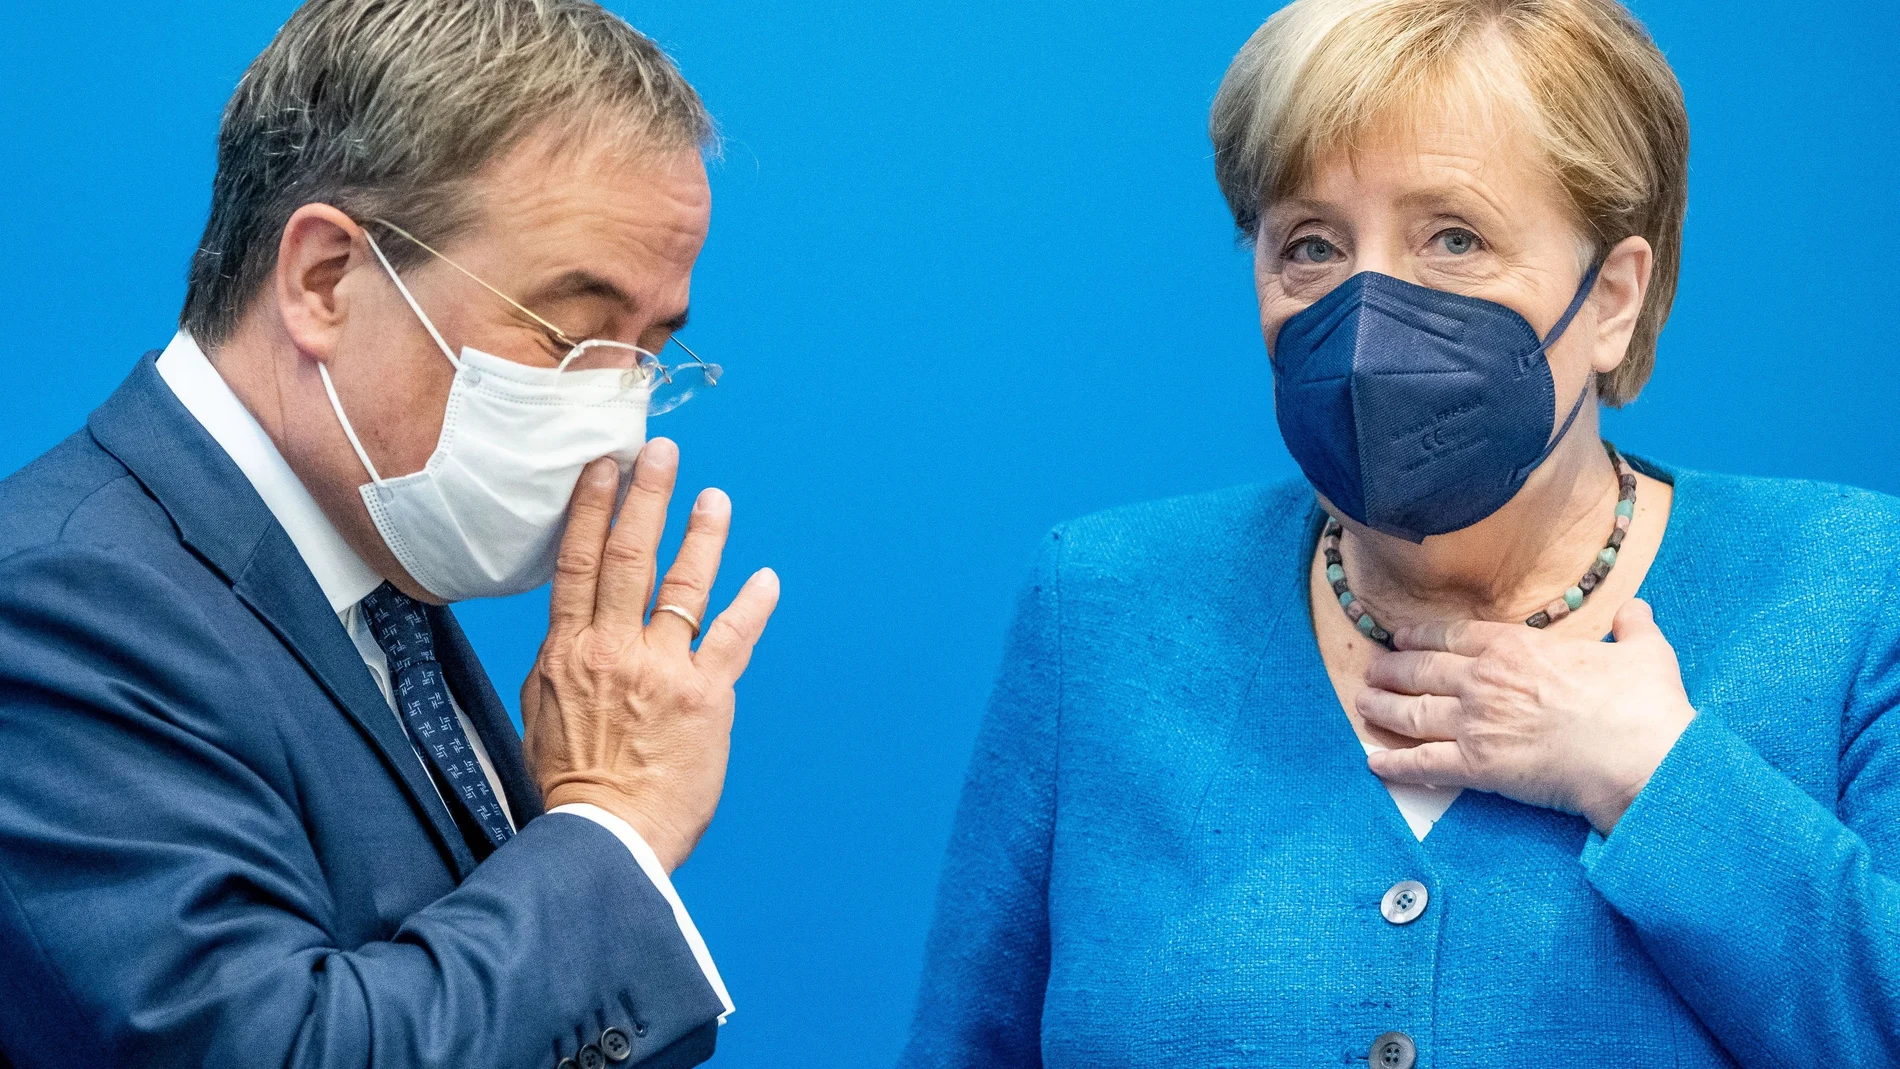 La canciller alemana, Angela Merkel, y su sucesor al frente de la CDU, Armin Laschet